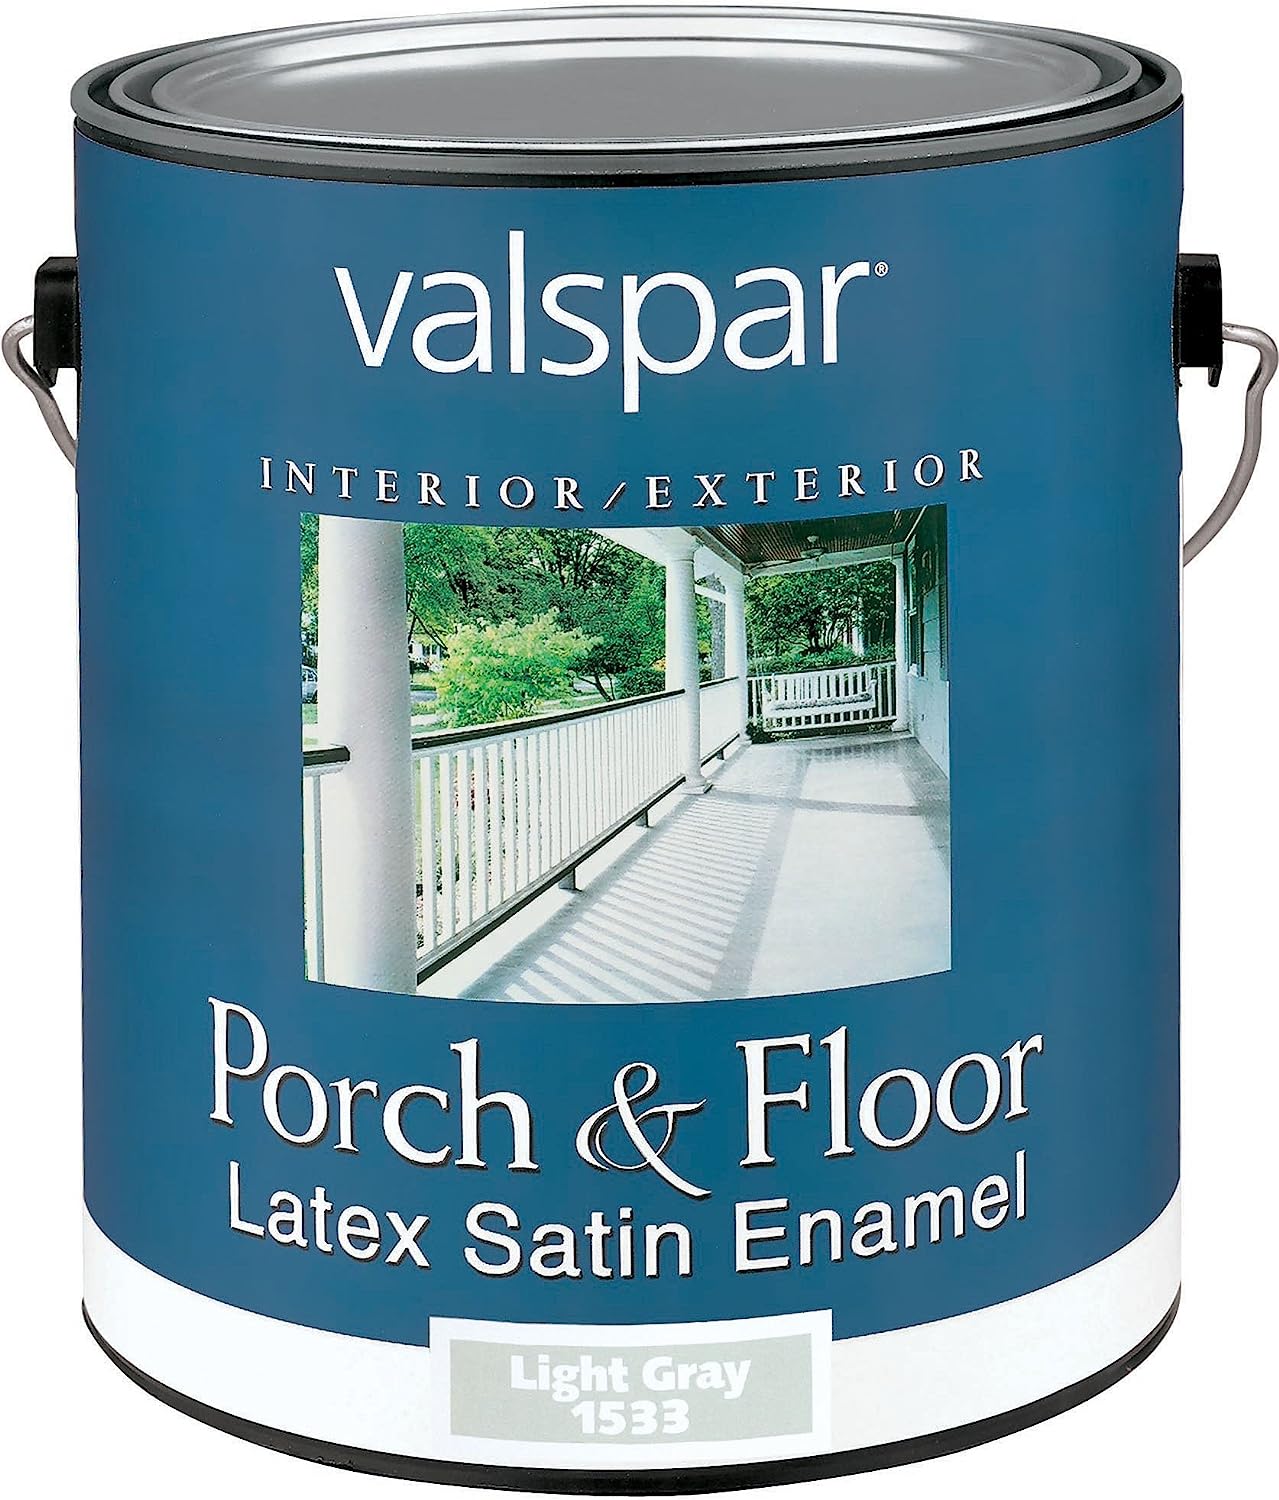 Valspar 1533 Porch and Floor Latex Satin Enamel, [...]